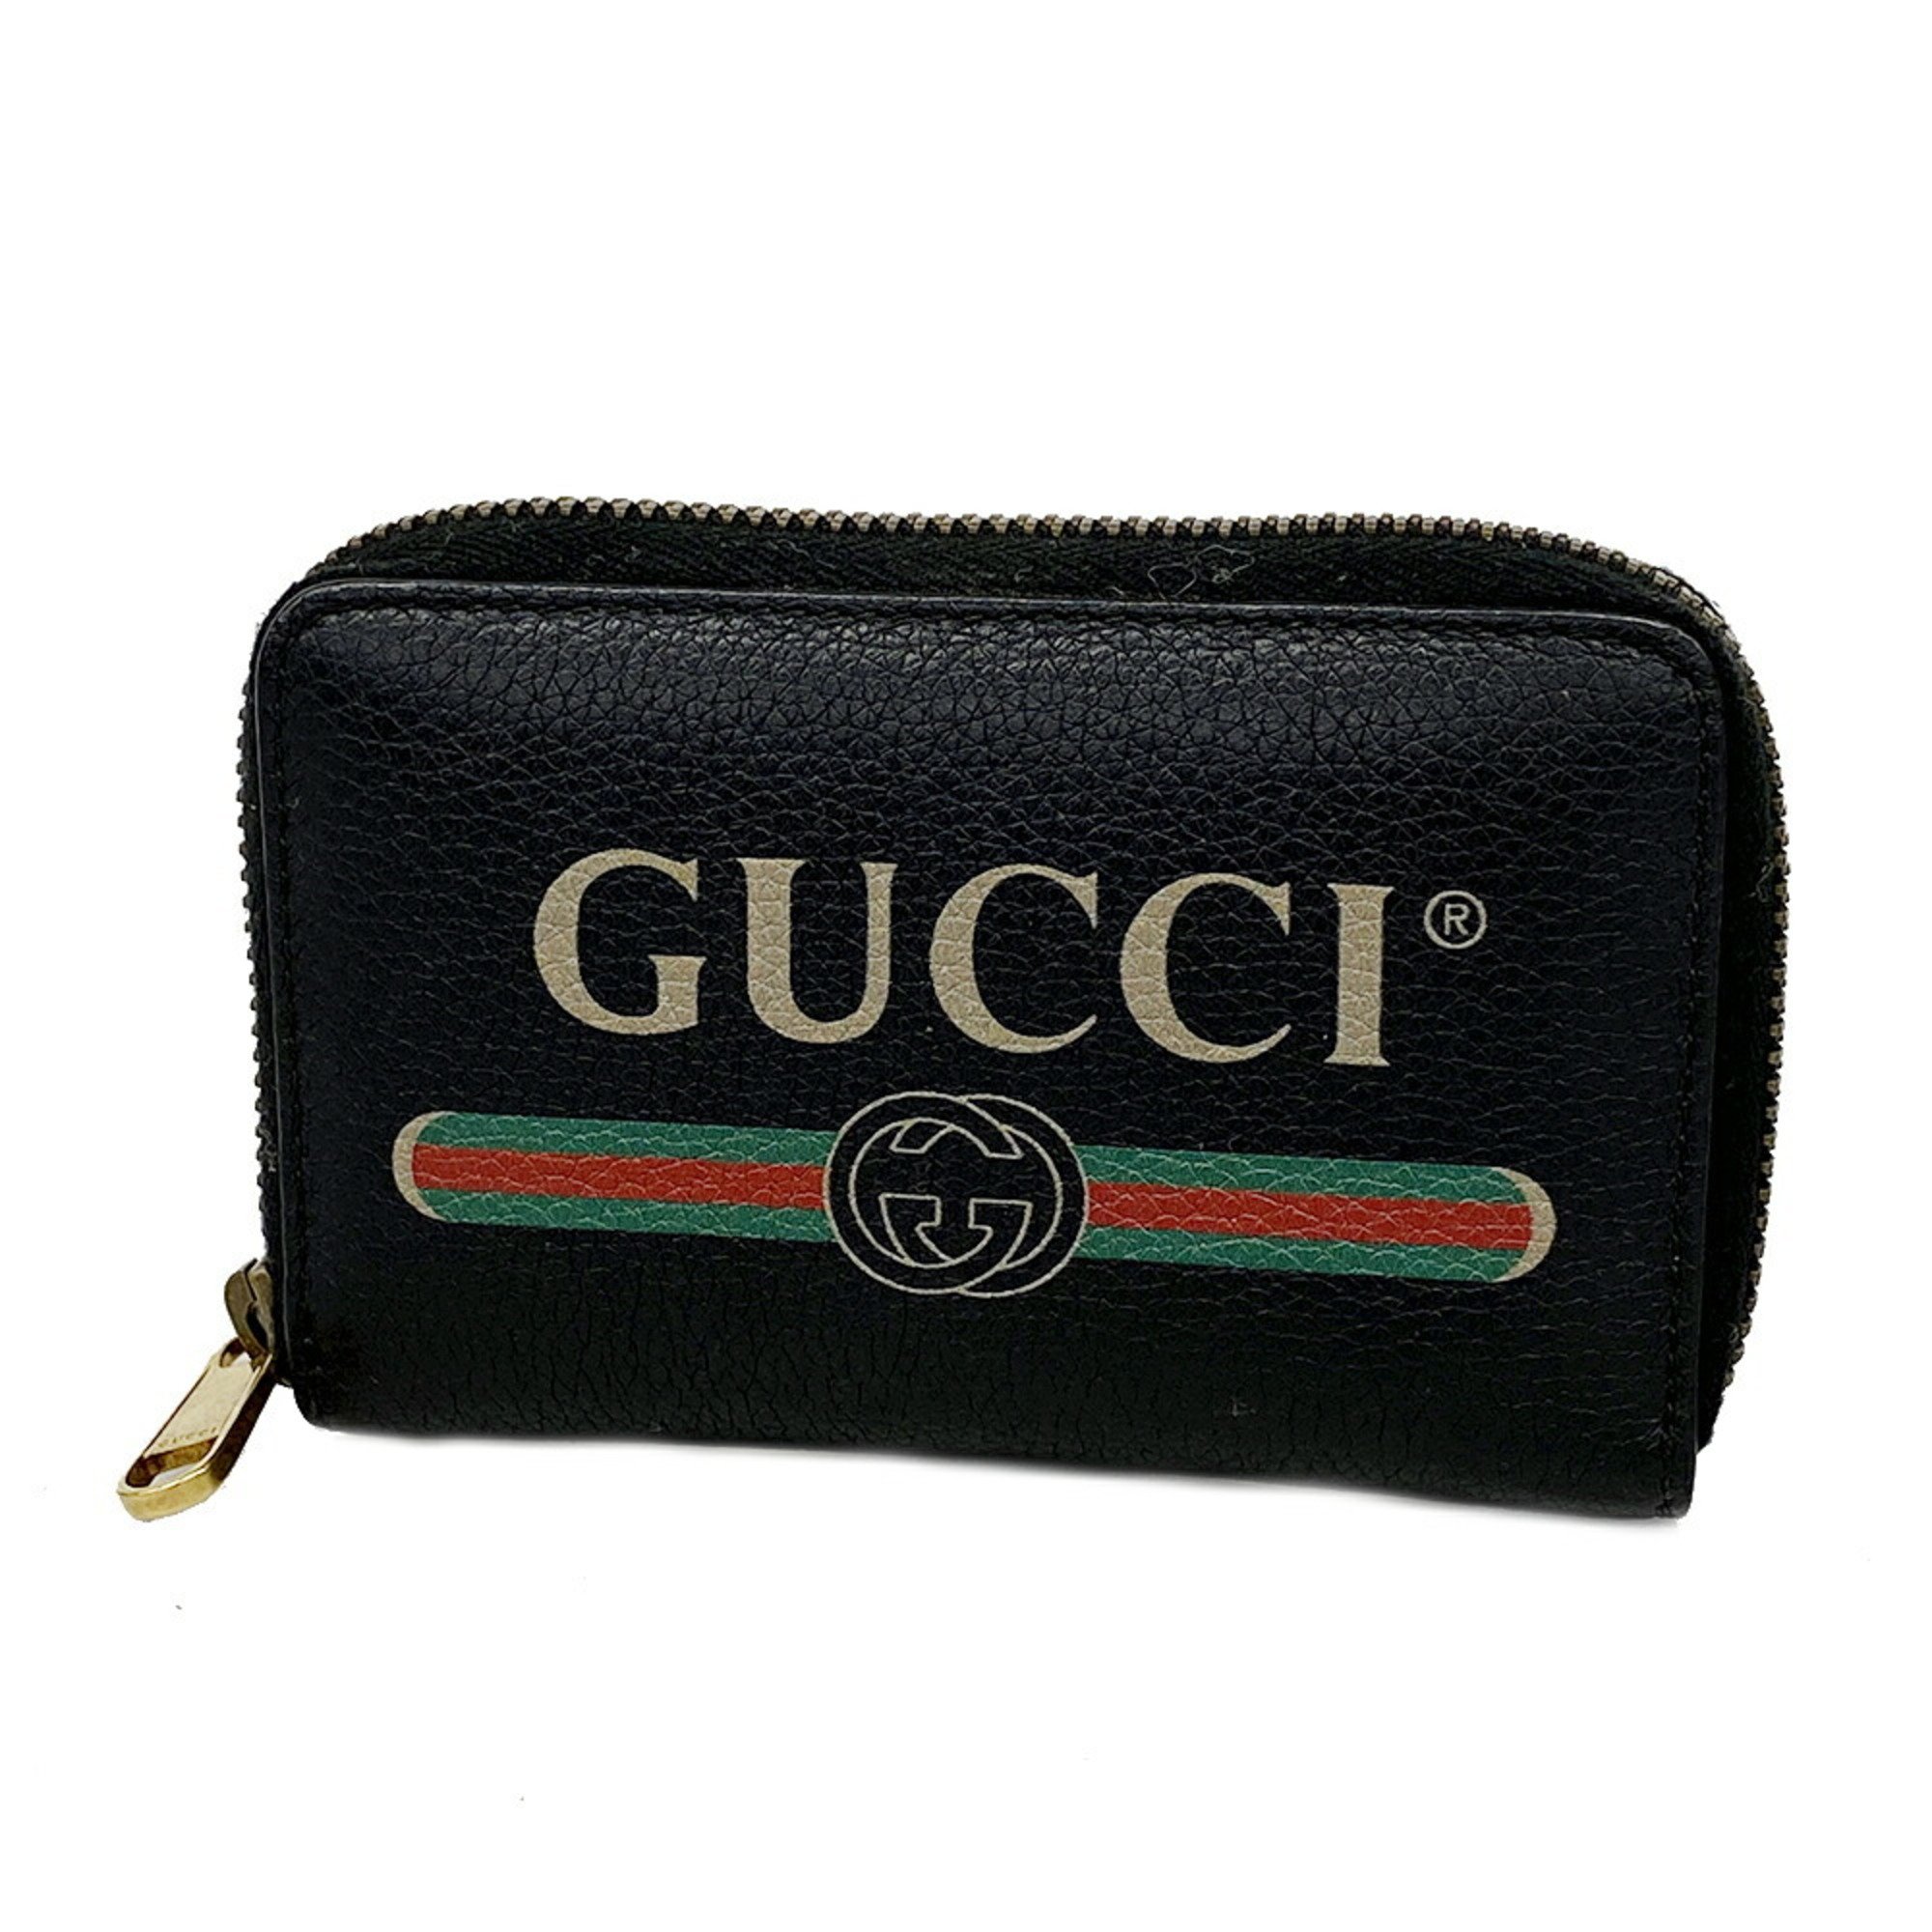 グッチ(Gucci) グッチ 財布・コインケース 96319 493075 レザー 